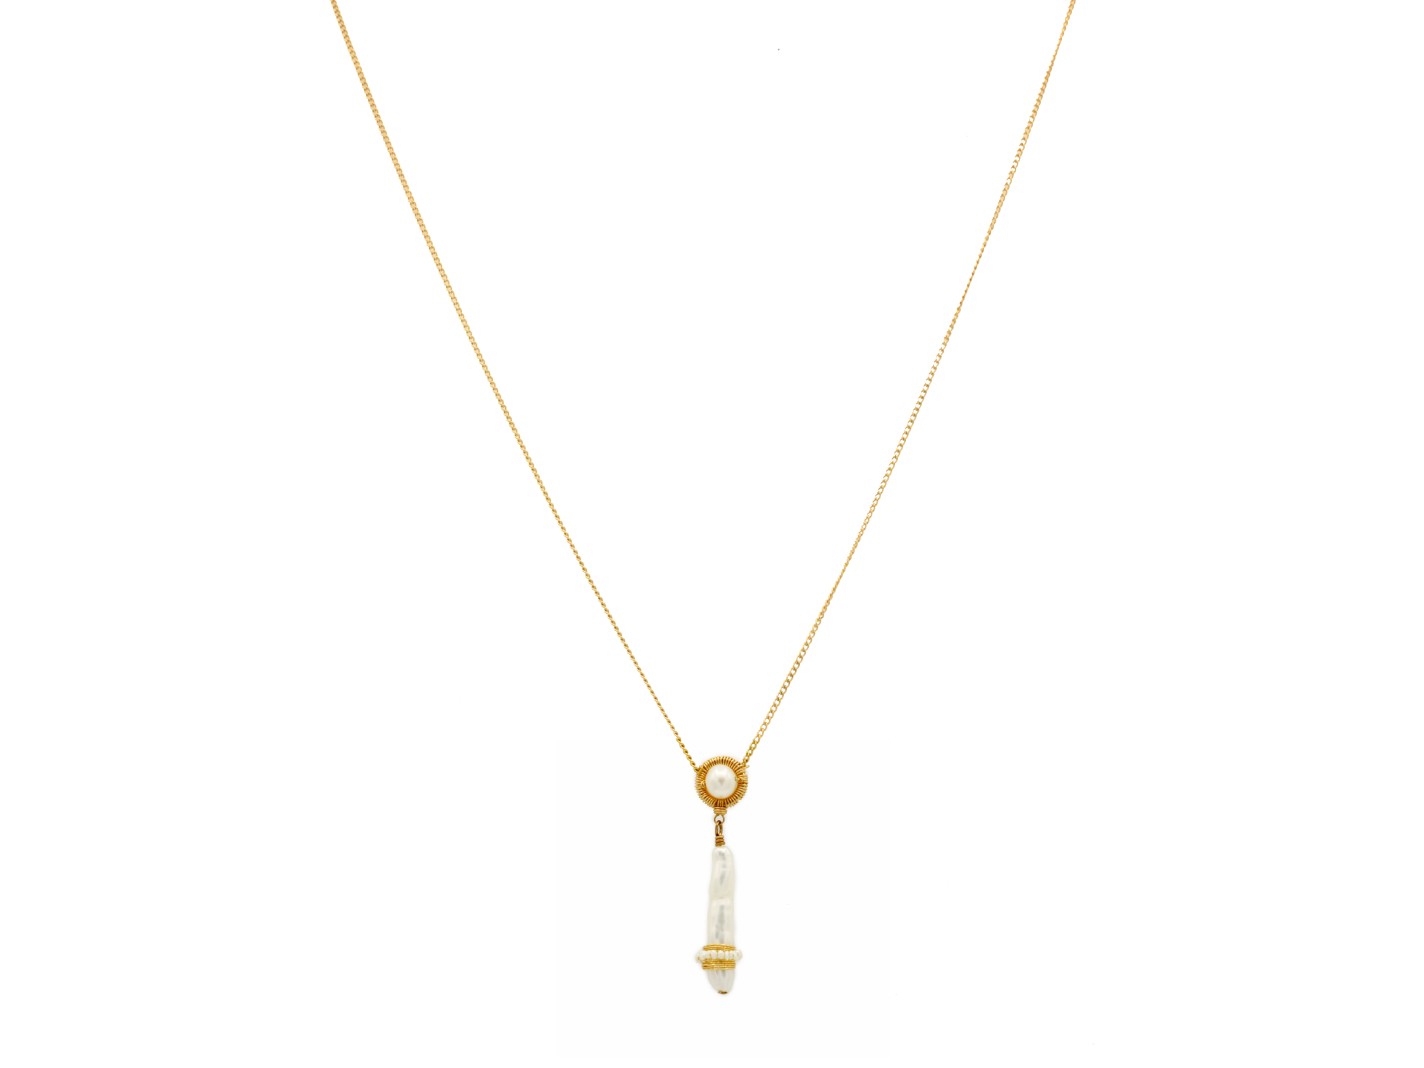 Dana Kellin Jewelry | Wrapped Freshwater Pearl Pendant Necklace | Firecracker